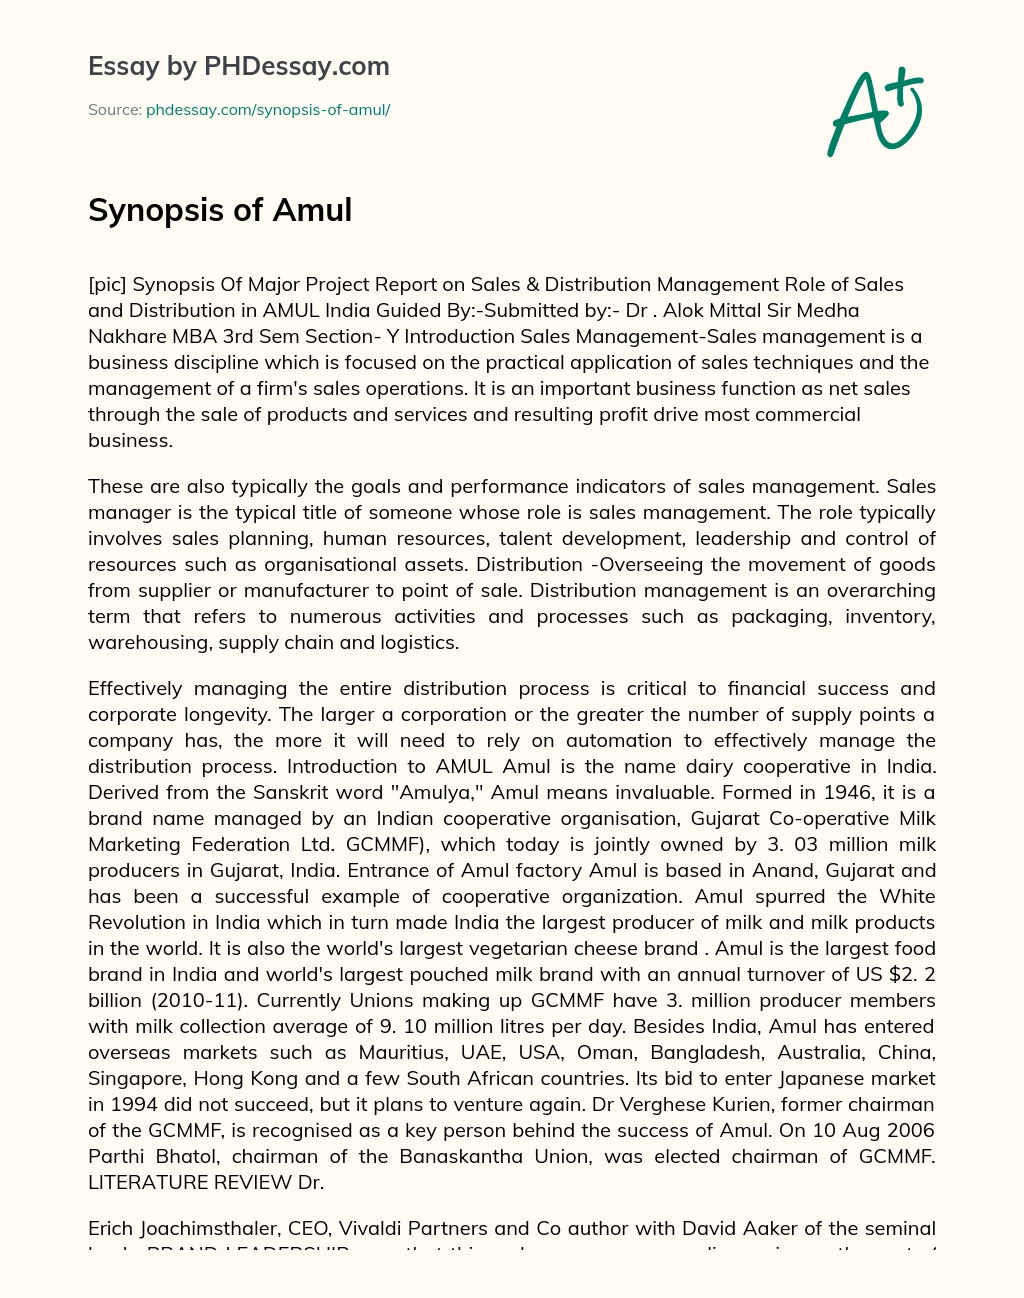 Synopsis of Amul essay